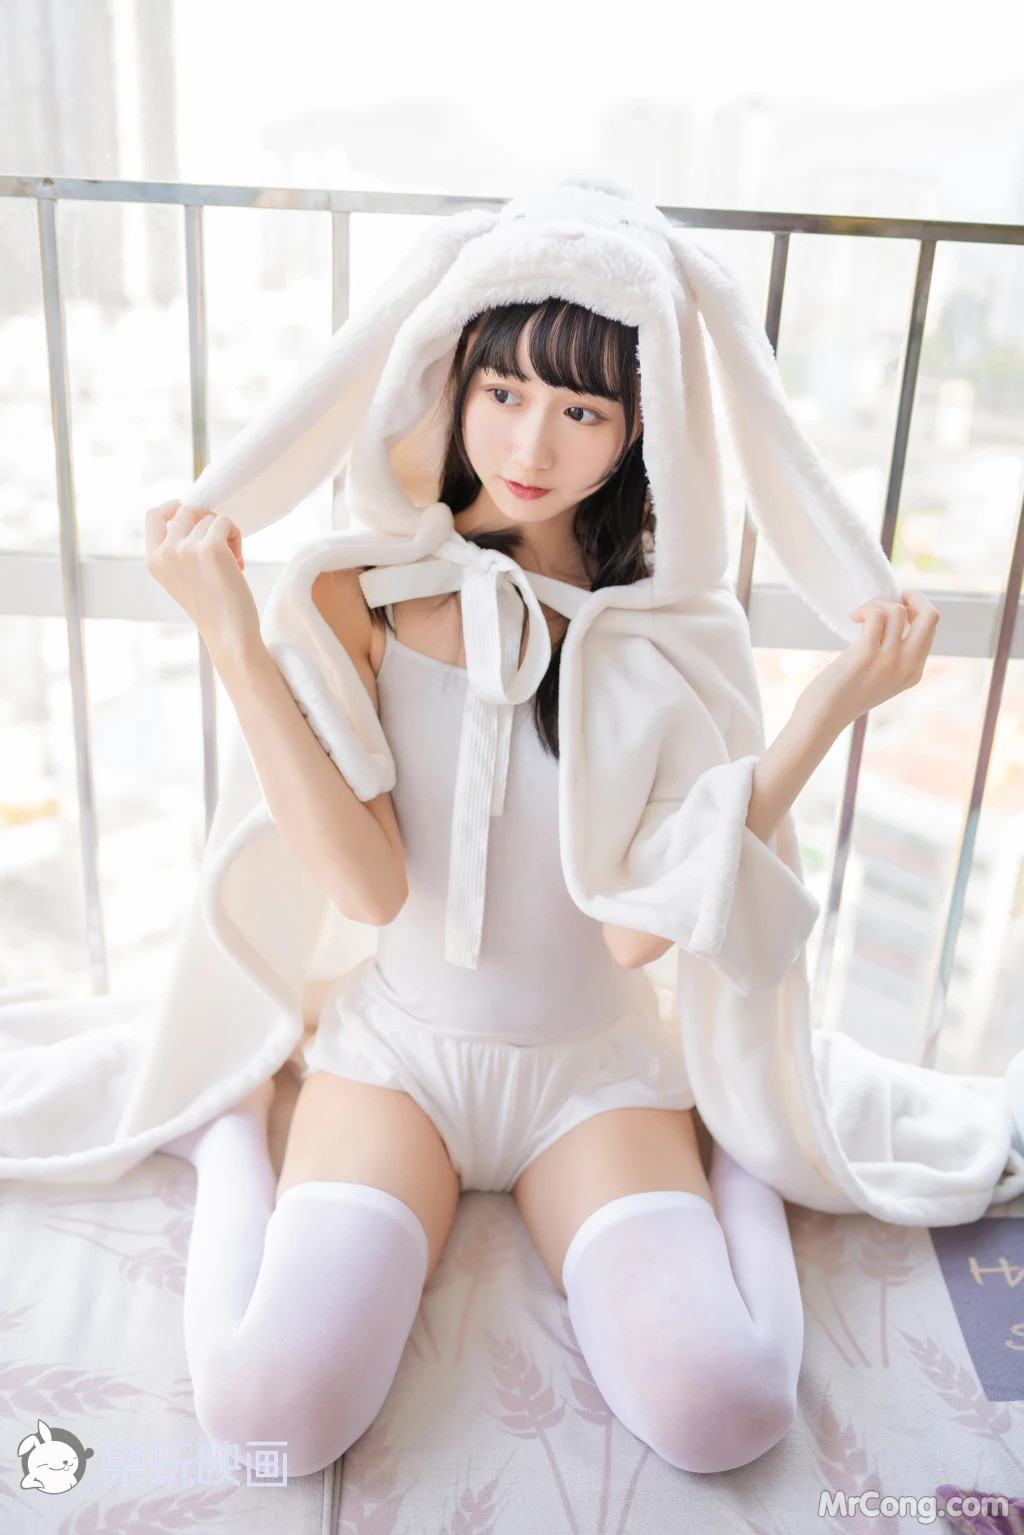 Cosplay@兔玩映画 Vol.035: 浴巾兔子 (42 photos) photo 1-18